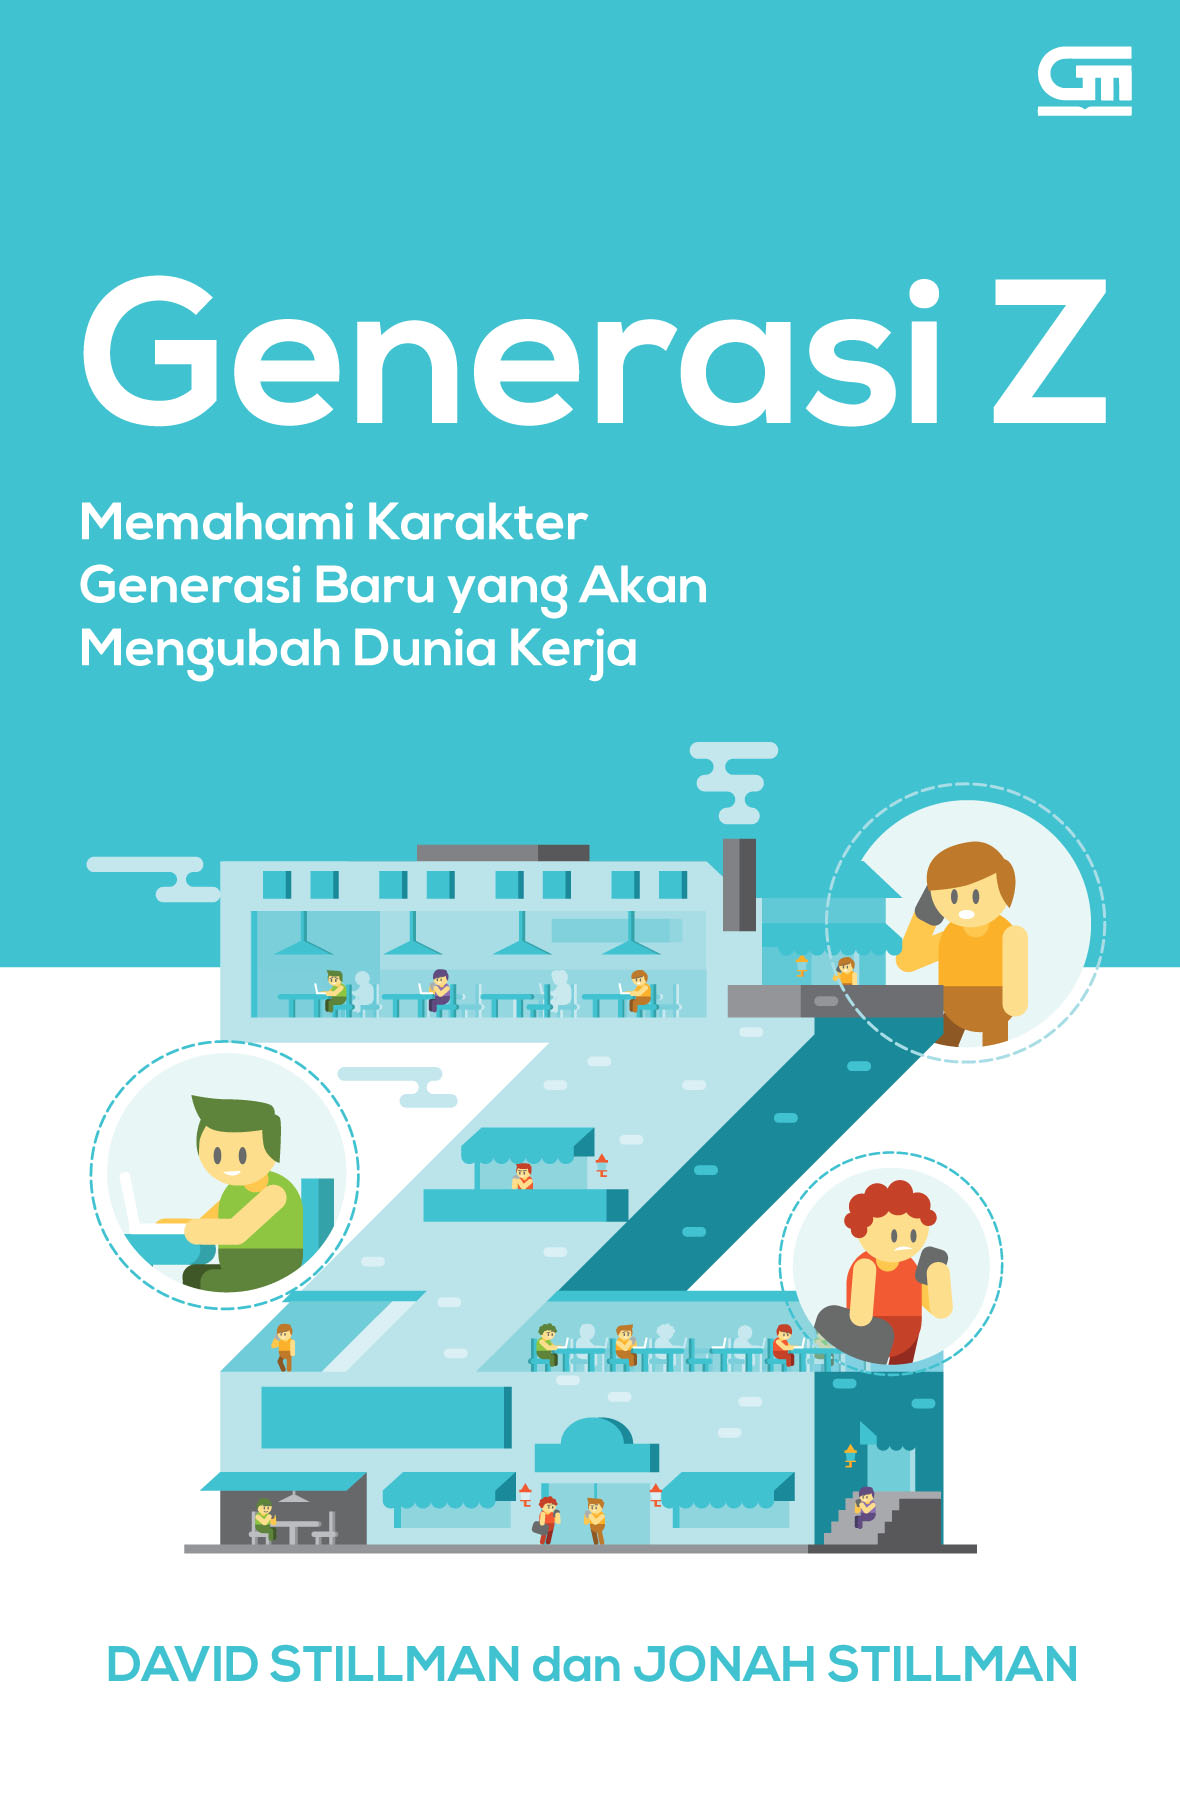 Generasi Z butuh pendidikan akhlak | www.bing.com